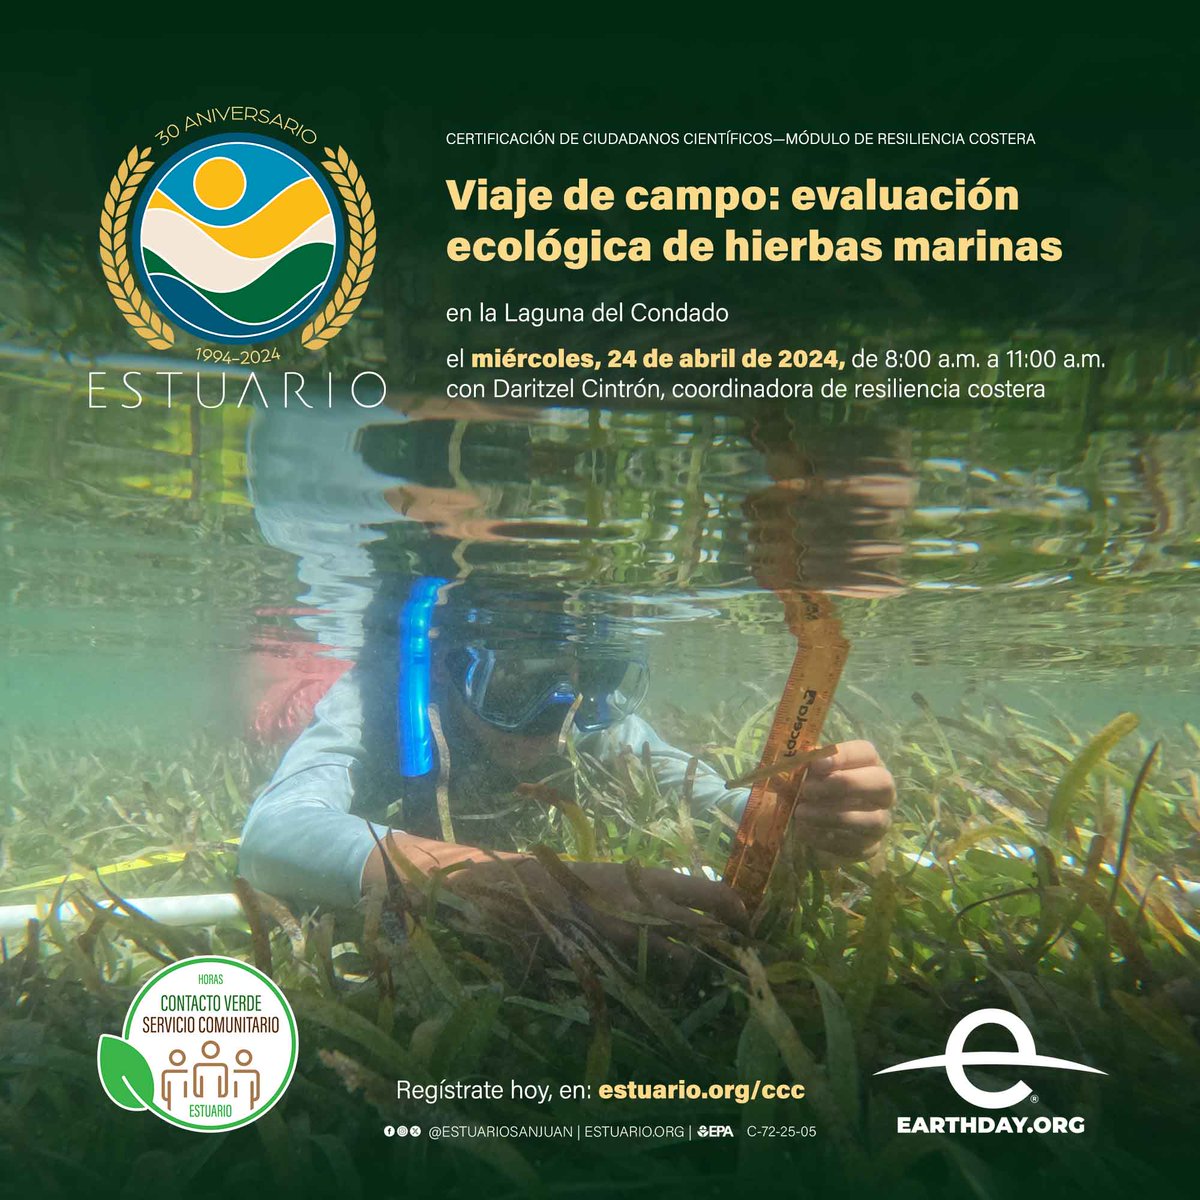 Ven a la próxima evaluación ecológica de hierbas marinas en la Laguna del Condado, el miércoles, 24 de abril, mes del planeta Tierra, de 8:00 a.m. a 11:00 a.m. Regístrate hoy, en: estuario.org/ccc — #puertorico #calidaddeagua #earthday